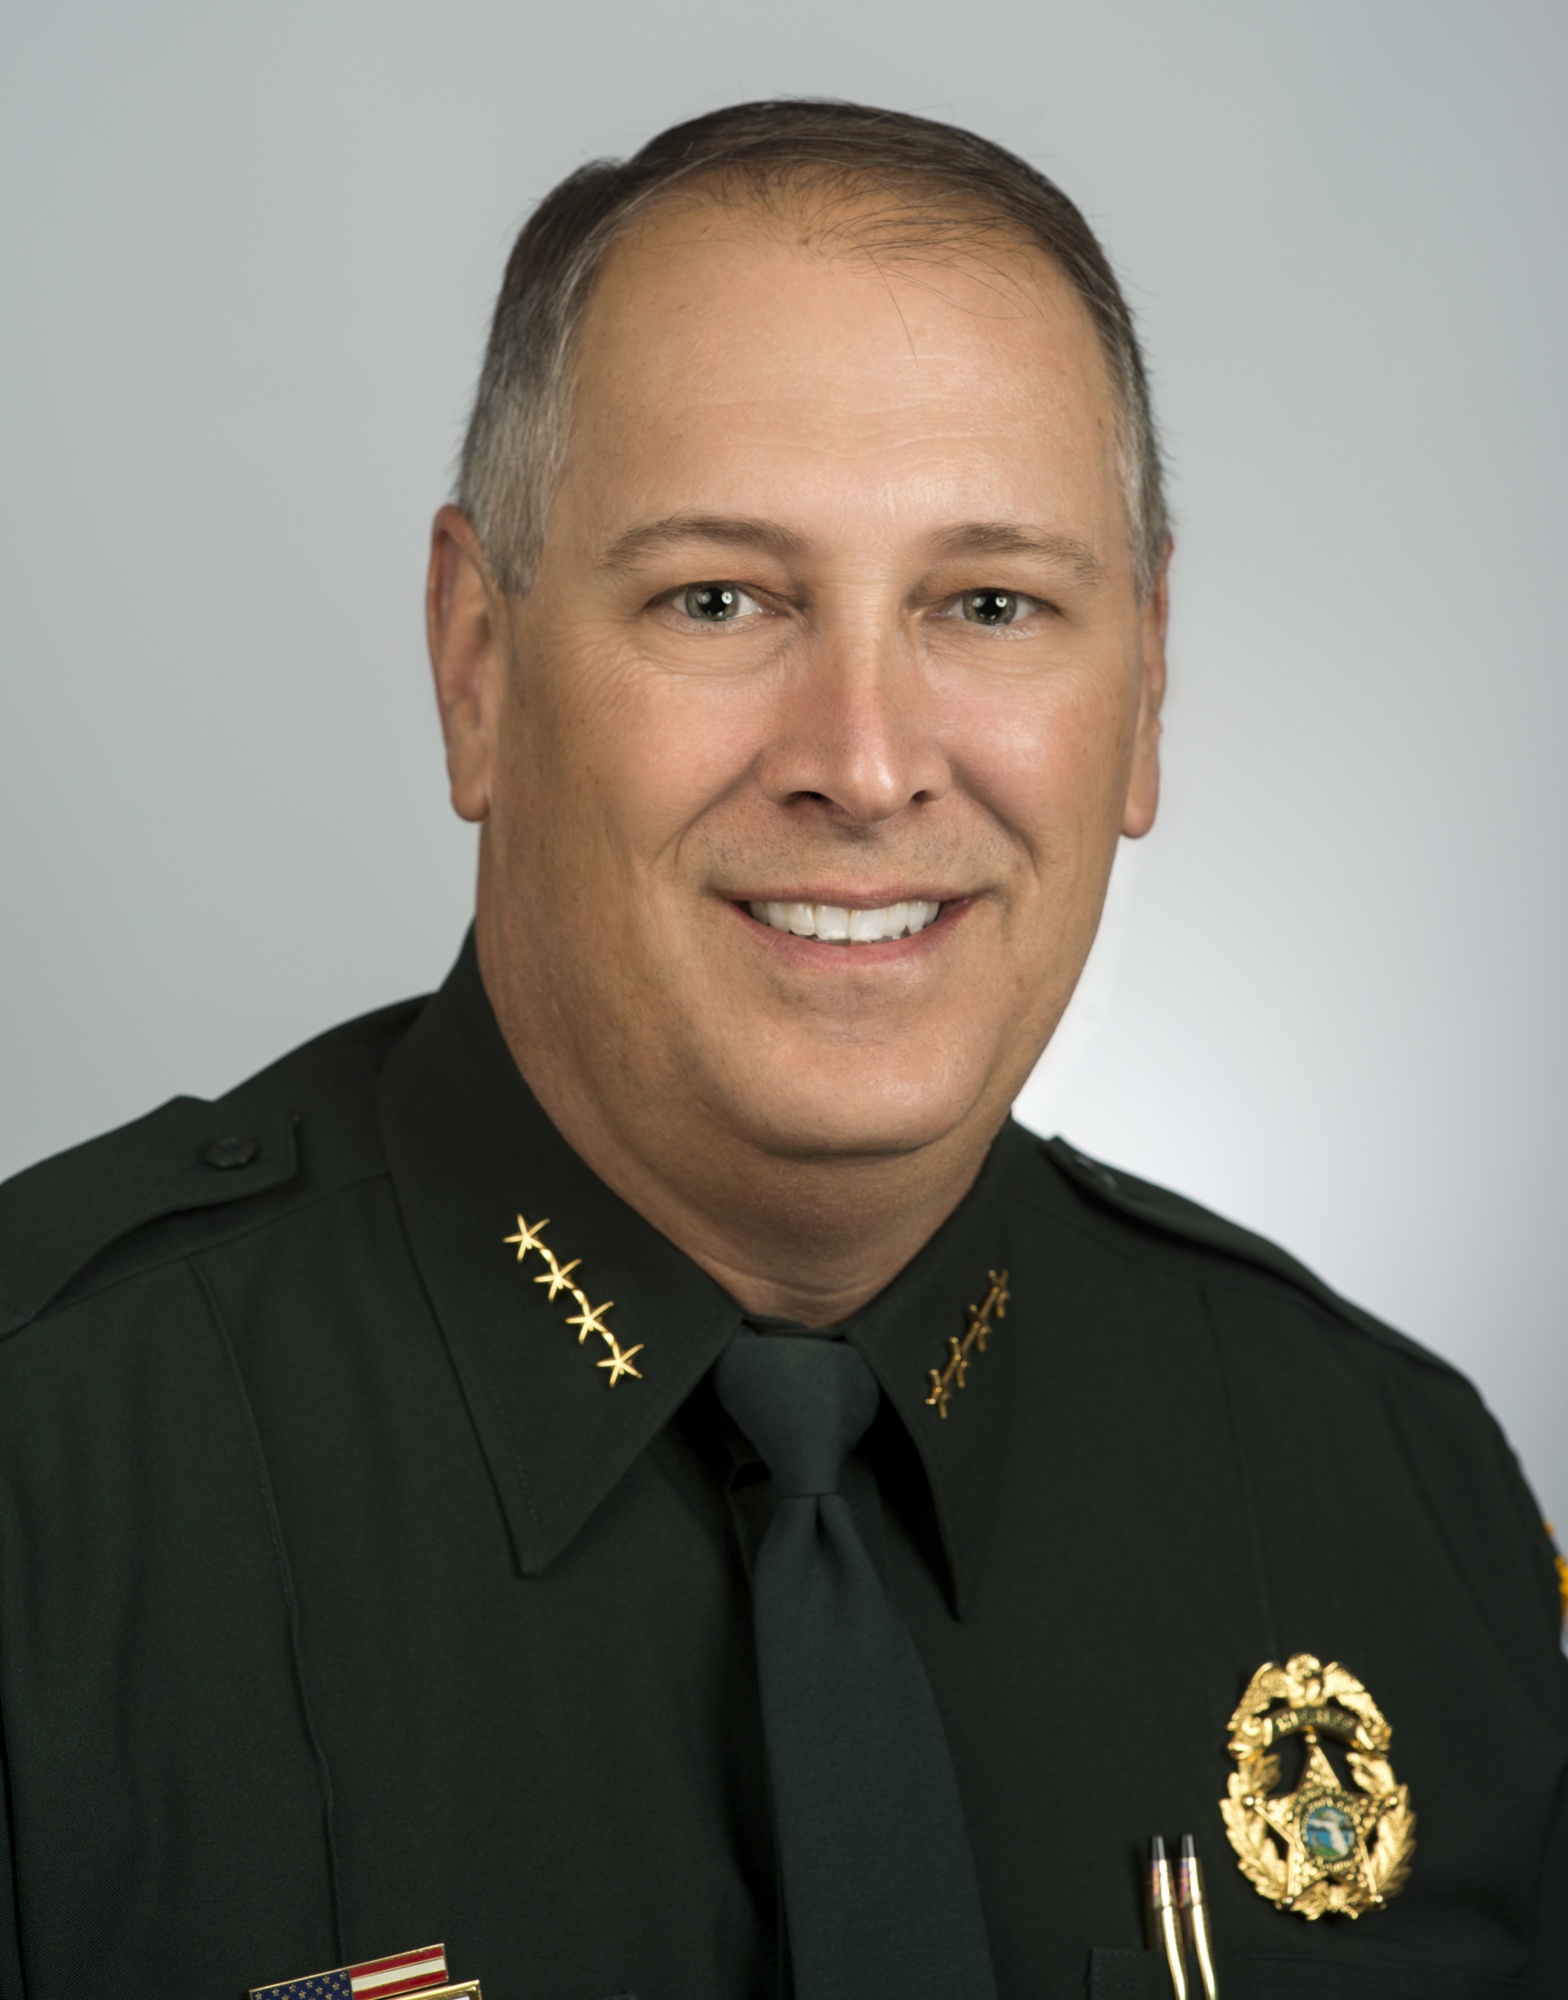 Sheriff Tom Knight